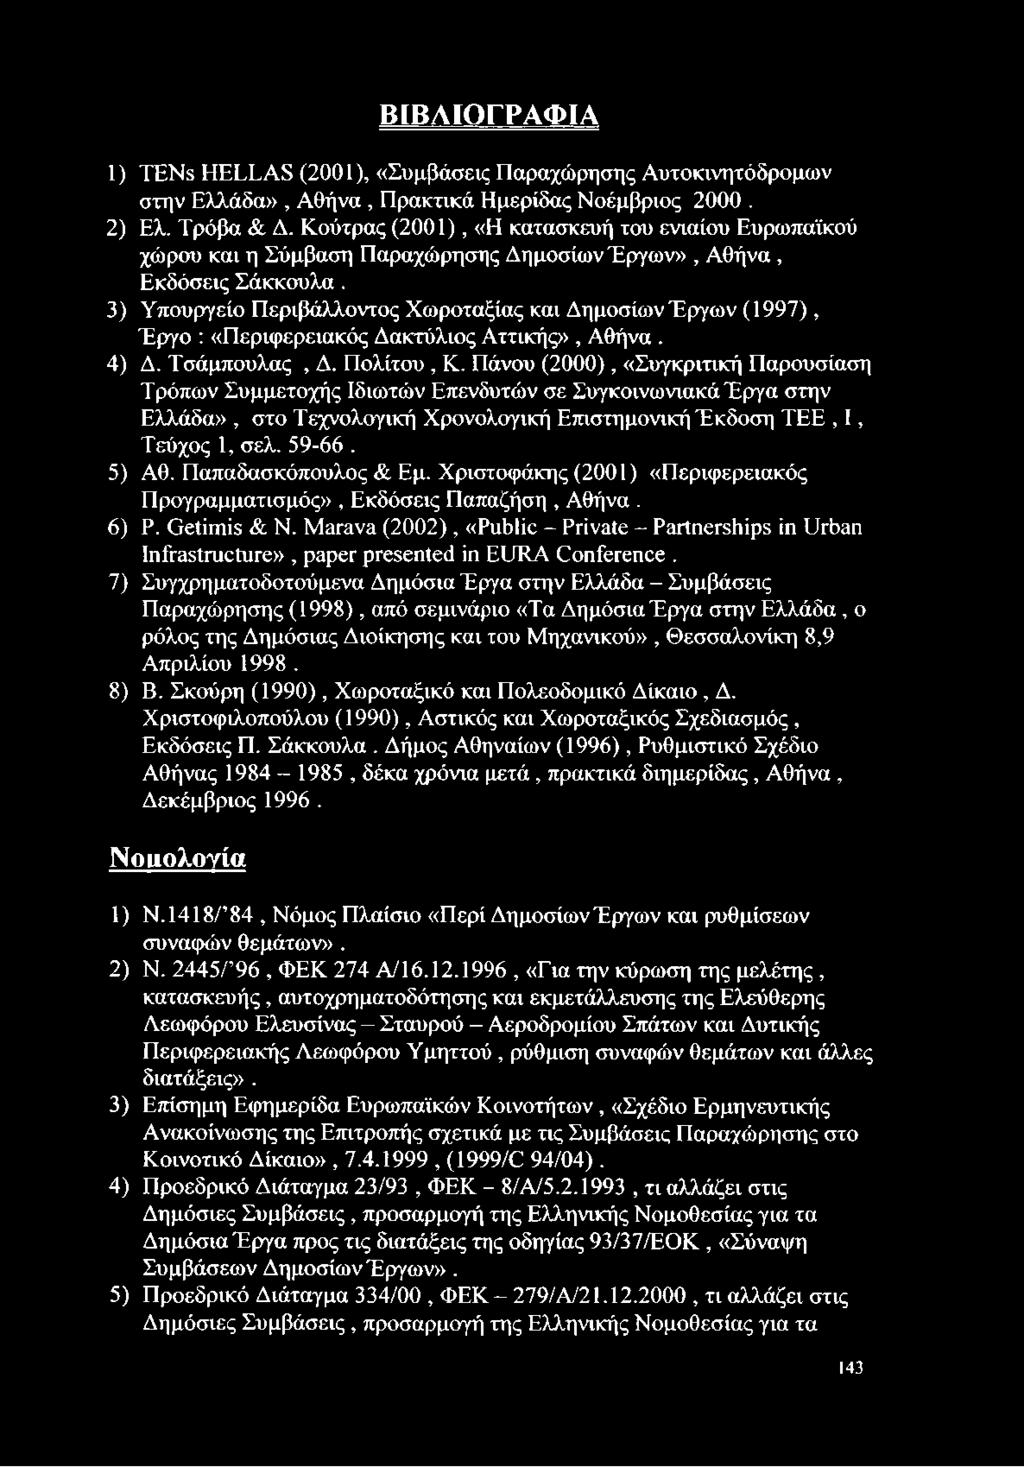 3) Υπουργείο Περιβάλλοντος Χωροταξίας και Δημοσίων Έργων (1997), Έργο : «Περιφερειακός Δακτύλιος Αττικής», Αθήνα. 4) Δ. Τσάμπουλας, Δ. Πολίτου, Κ.